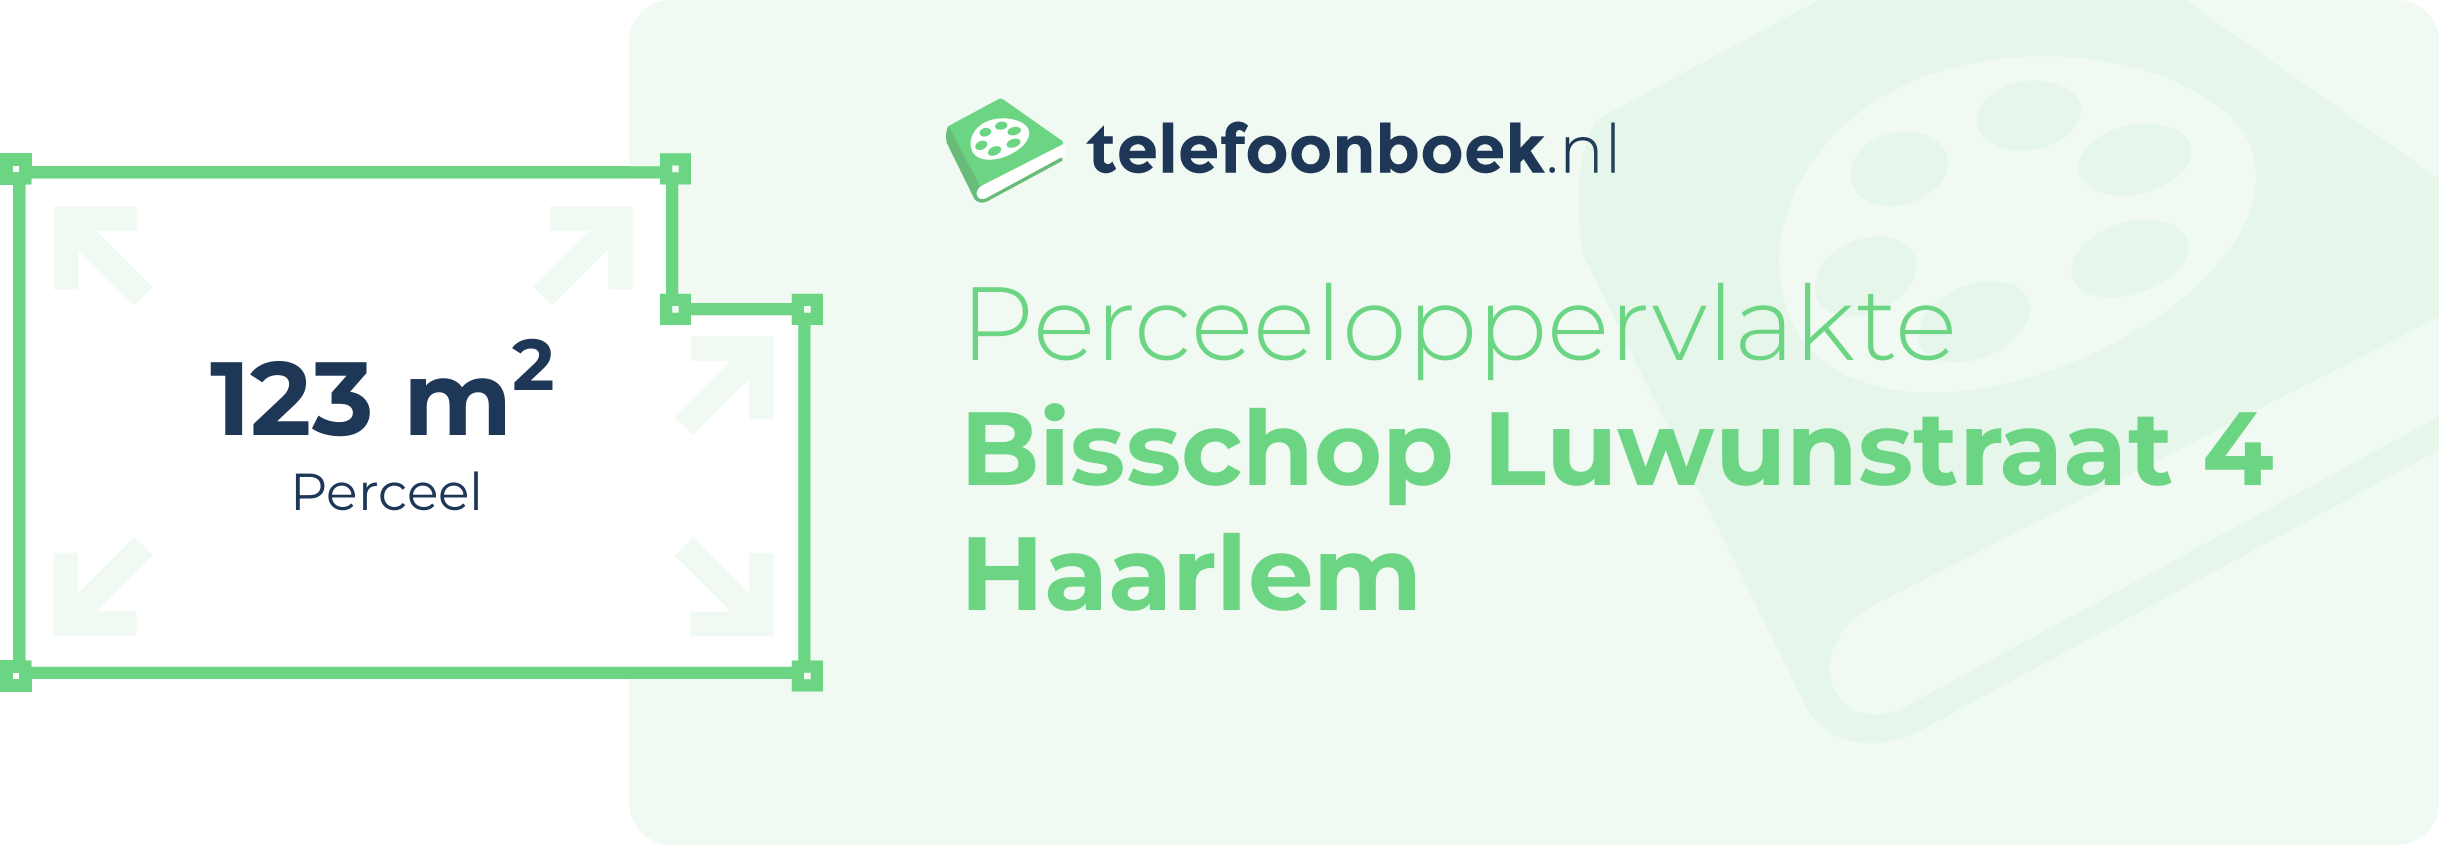 Perceeloppervlakte Bisschop Luwunstraat 4 Haarlem